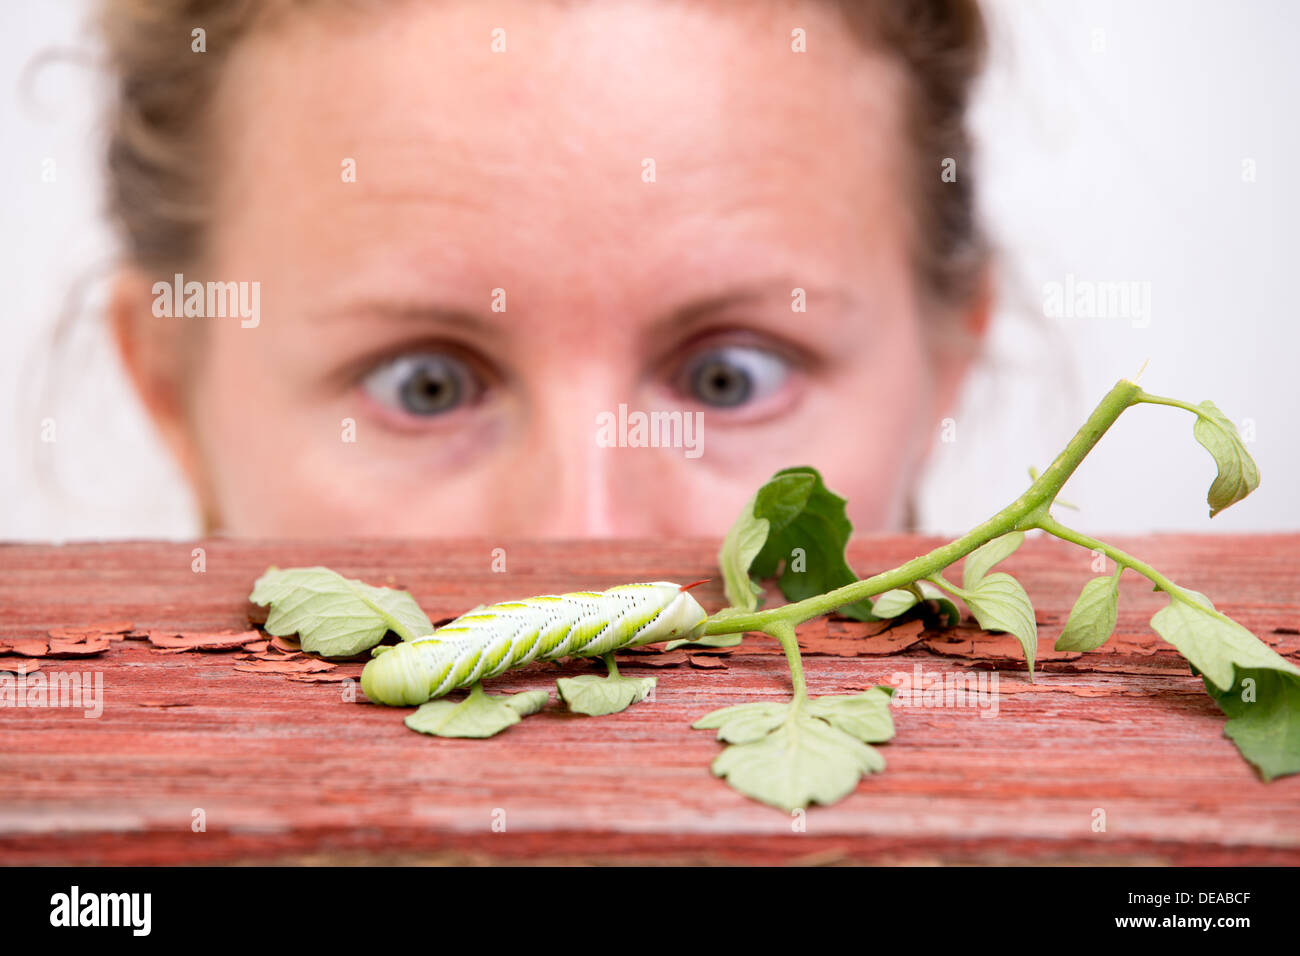 Frau, die gerade einer große grünen Raupe kriecht auf einem Blatt mit großen entsetzten Augen Schielen in Faszination Stockfoto